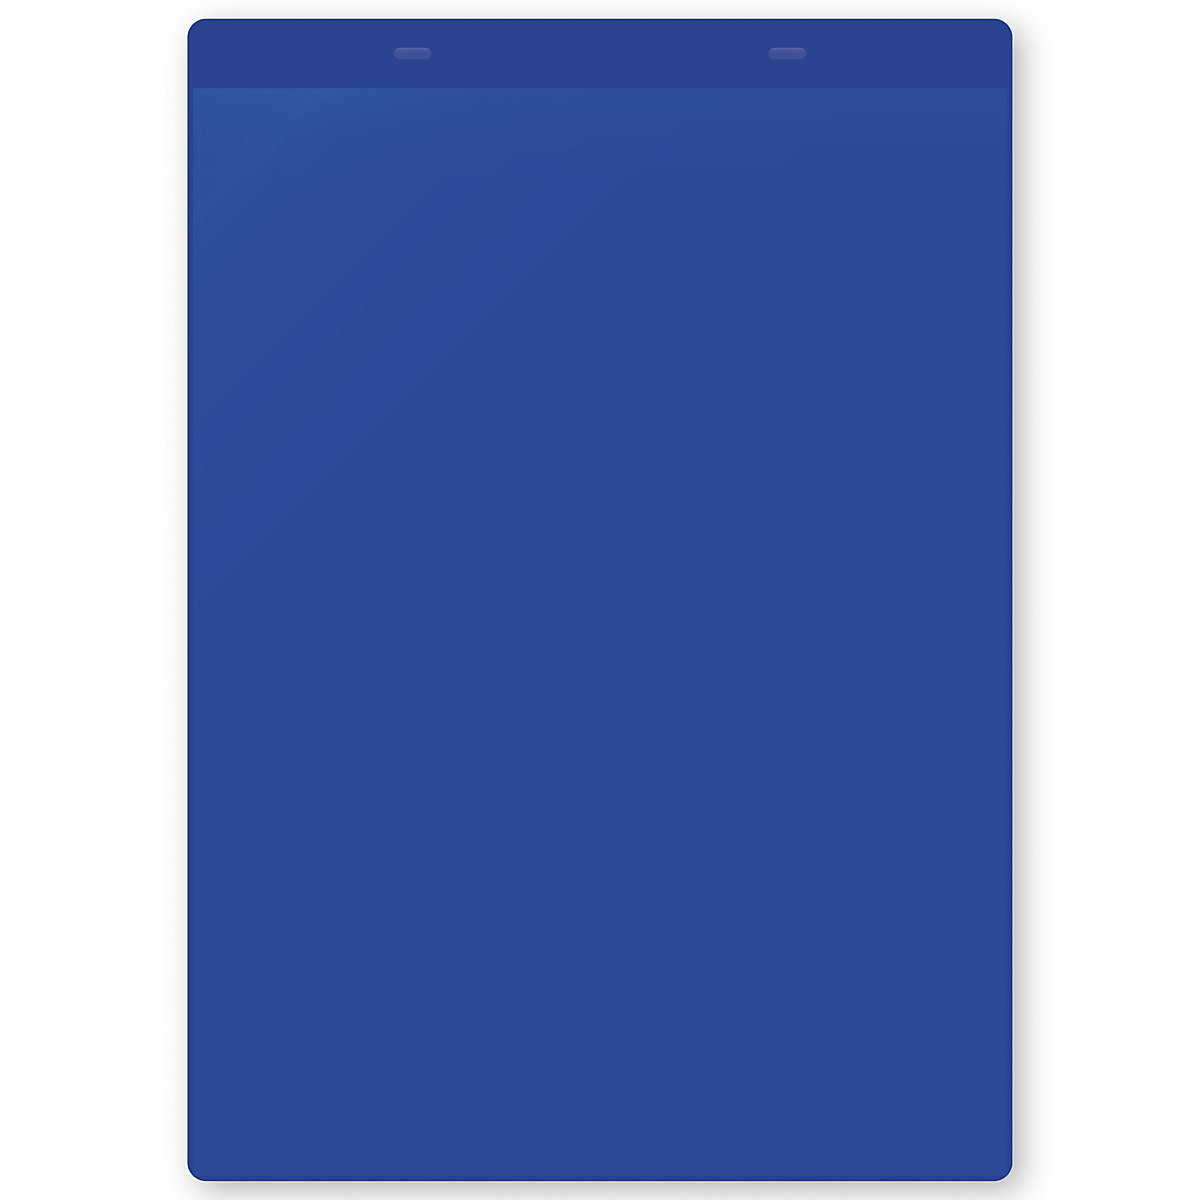 Öntapadó dokumentumtartó tasakok, DIN A4, álló, cs. e. 50 db, kék